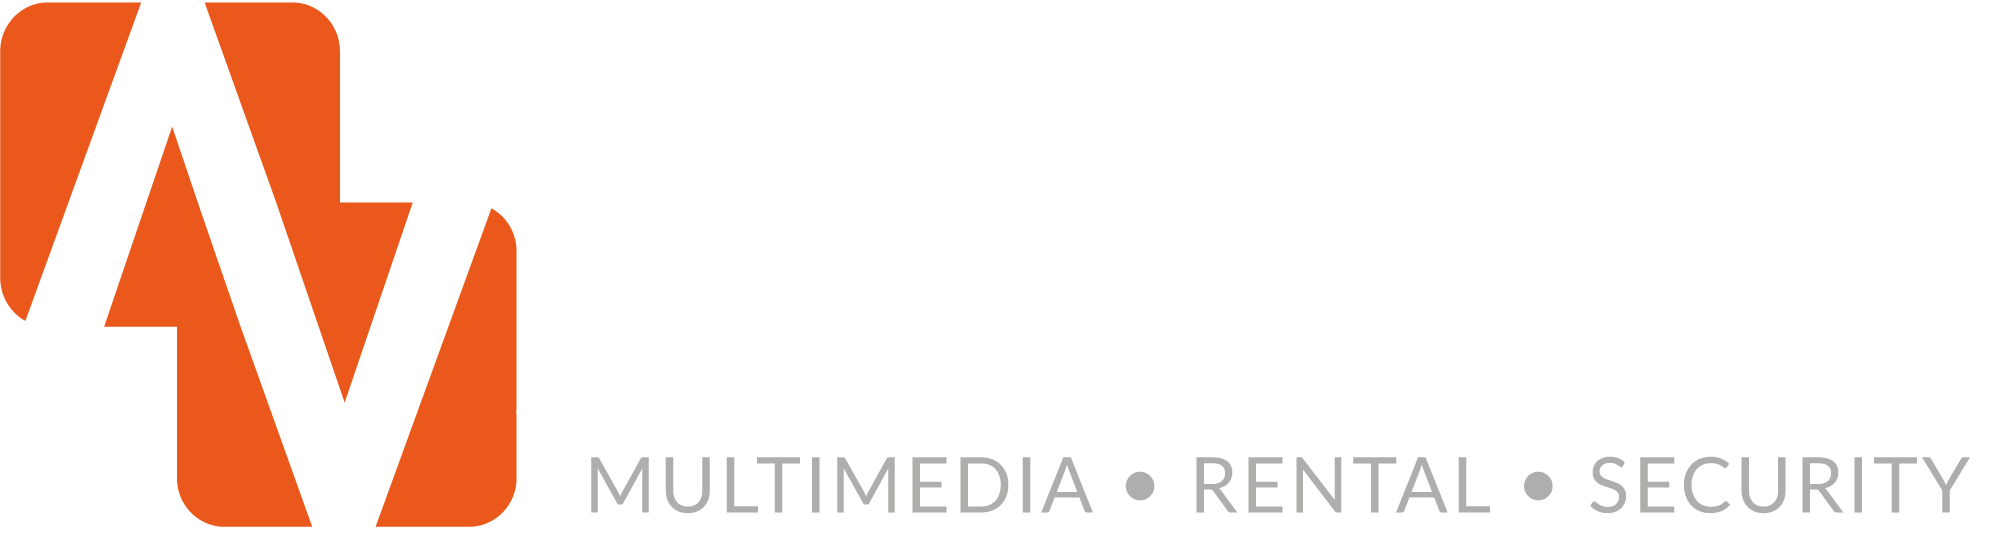 Welkom bij Averion Multimedia • Rental • Security